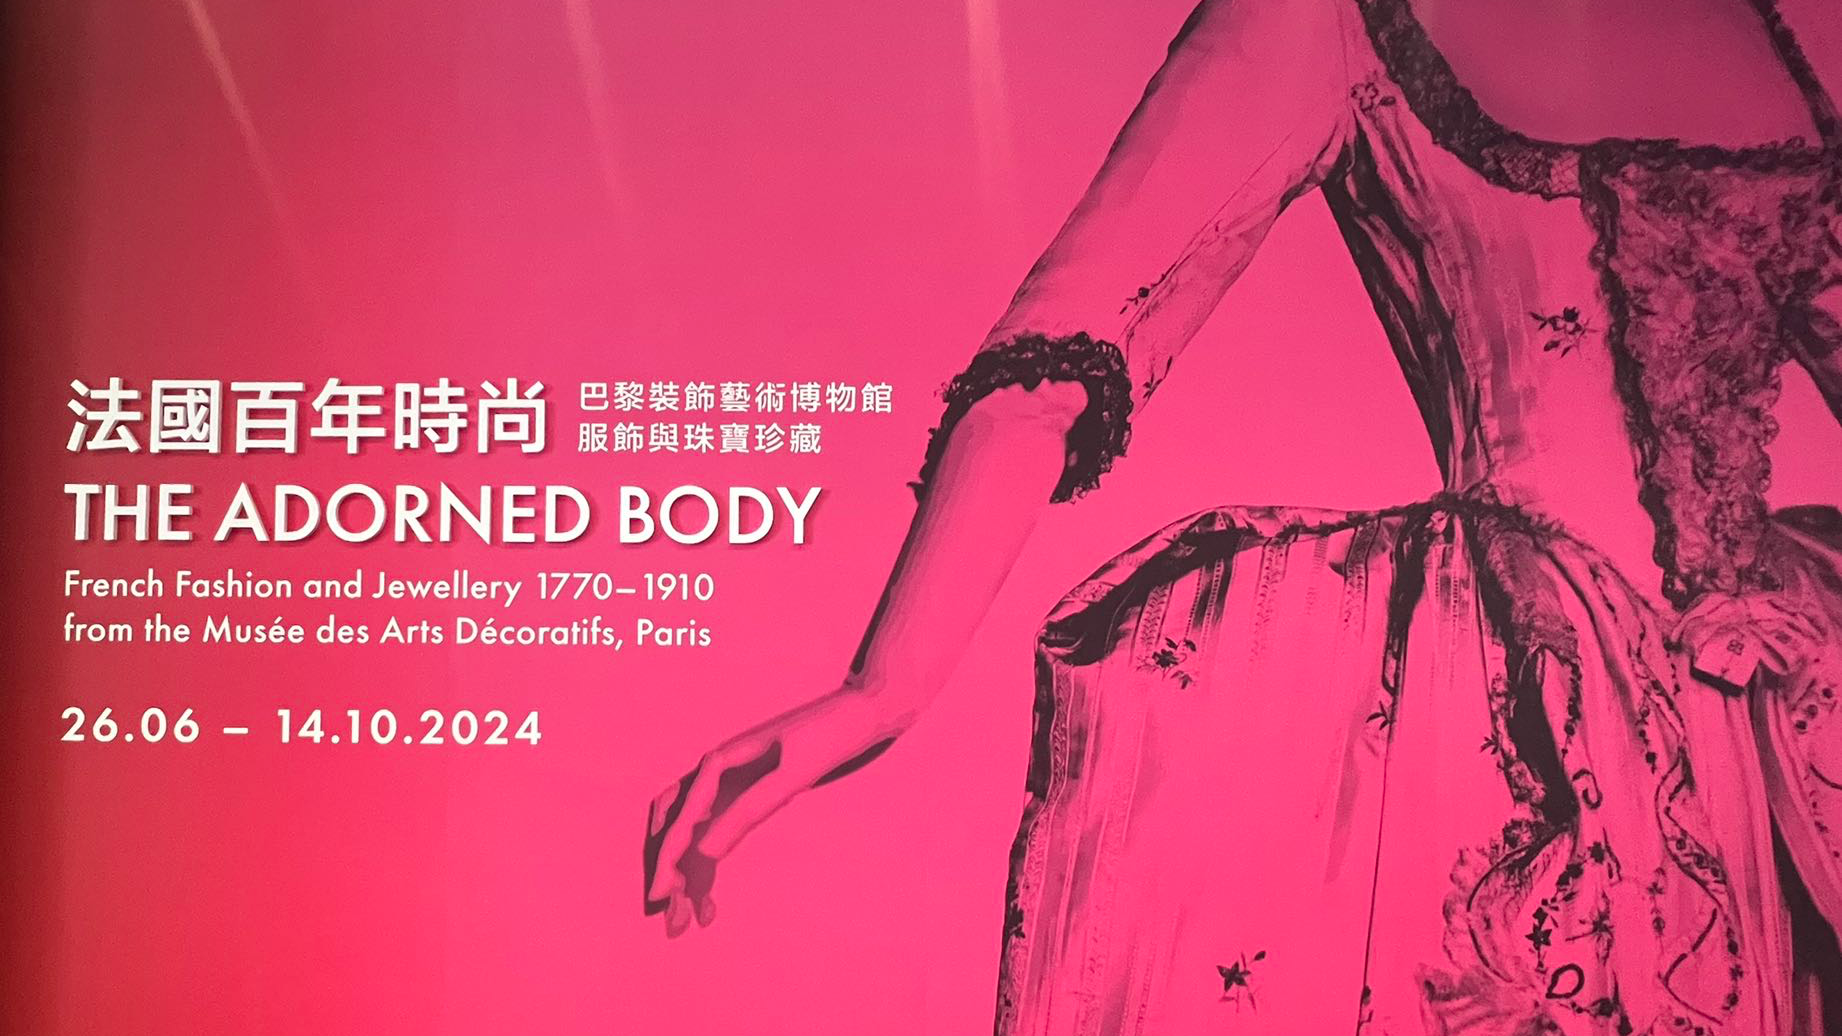 香港故宫文化博物馆推出“法国百年时尚”展览